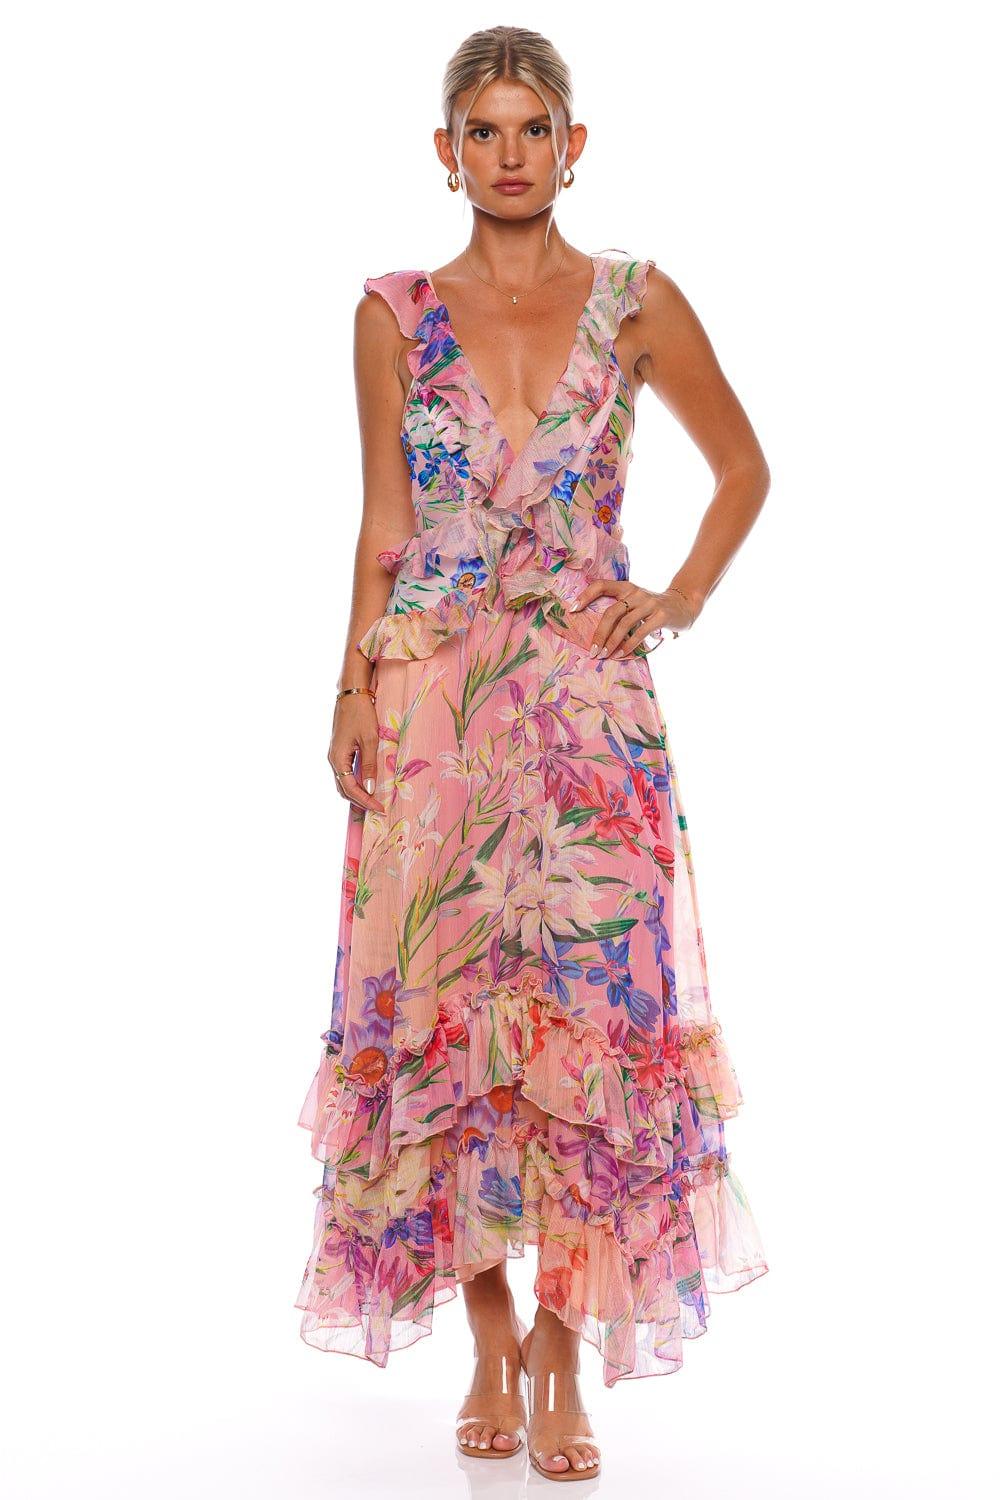 Lace Bustier Maxi Dress (FINAL SALE)